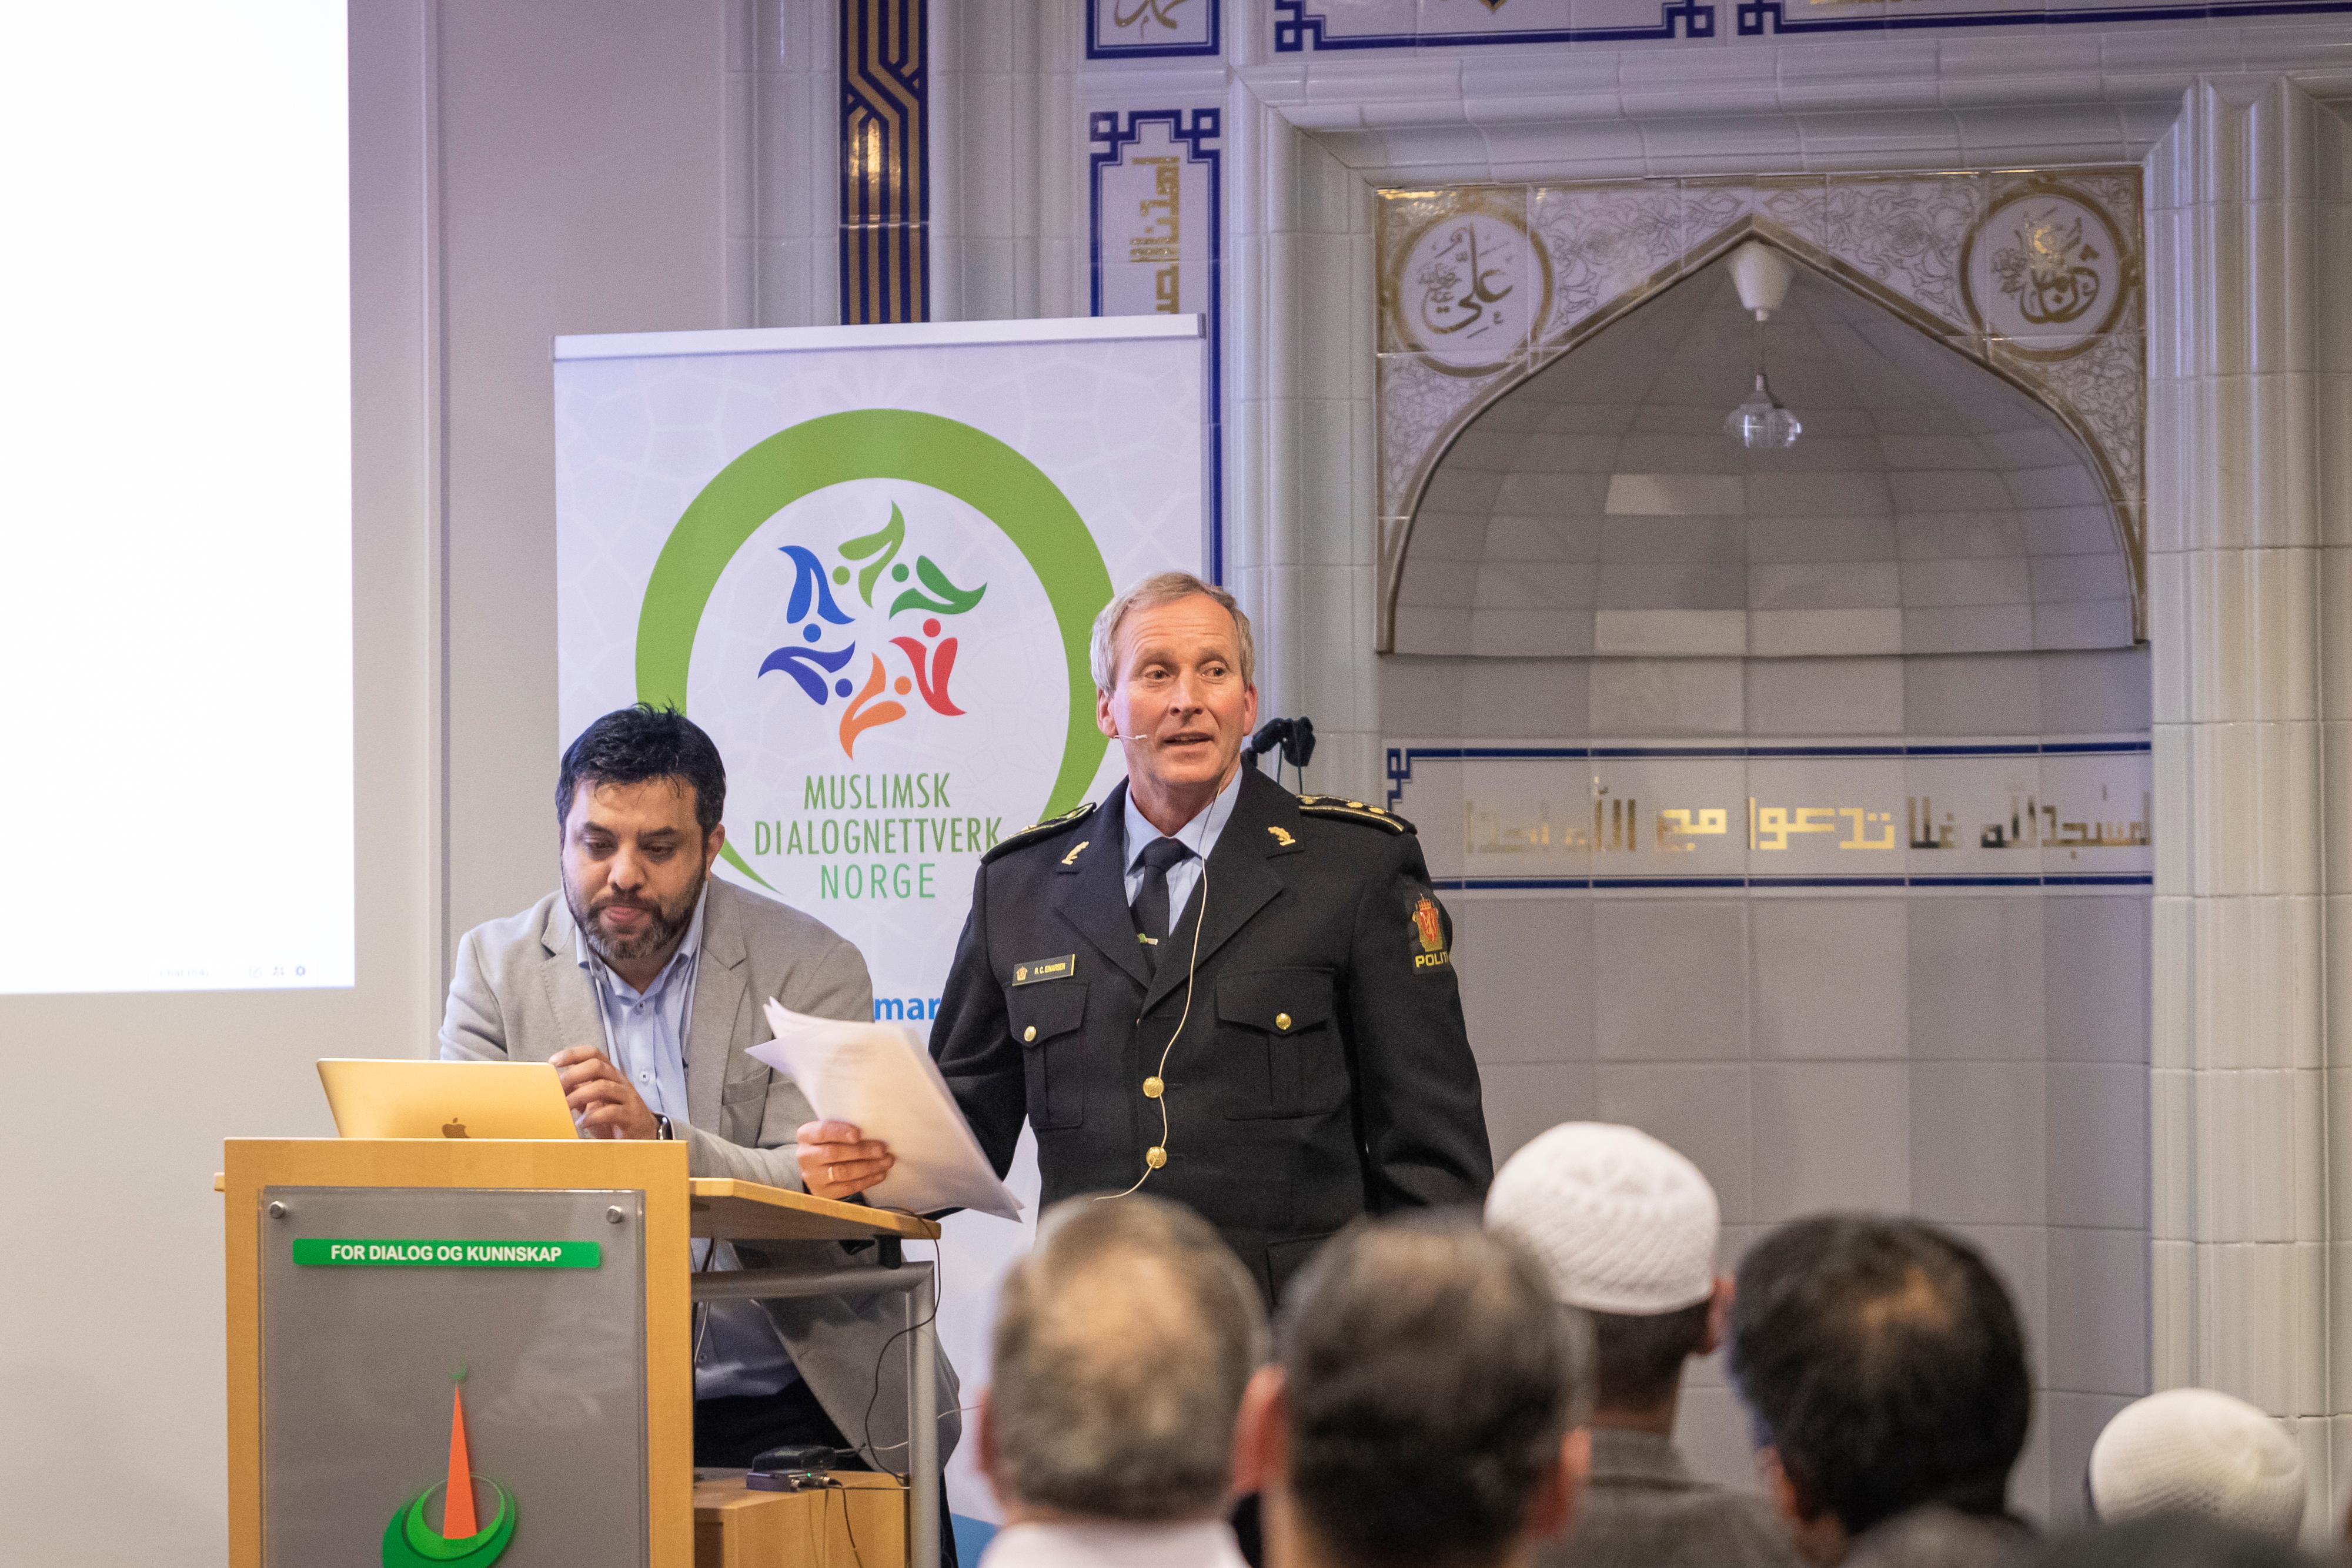 Åpent møte i Islamic Cultural Centre (ICC), angående koranbrenning. 

Arshad Jamil, Muslimsk dialognettverk, prosjektansvarlig.

Roy Cato Einarsen, politioverbetjent og mangfoldskontakt